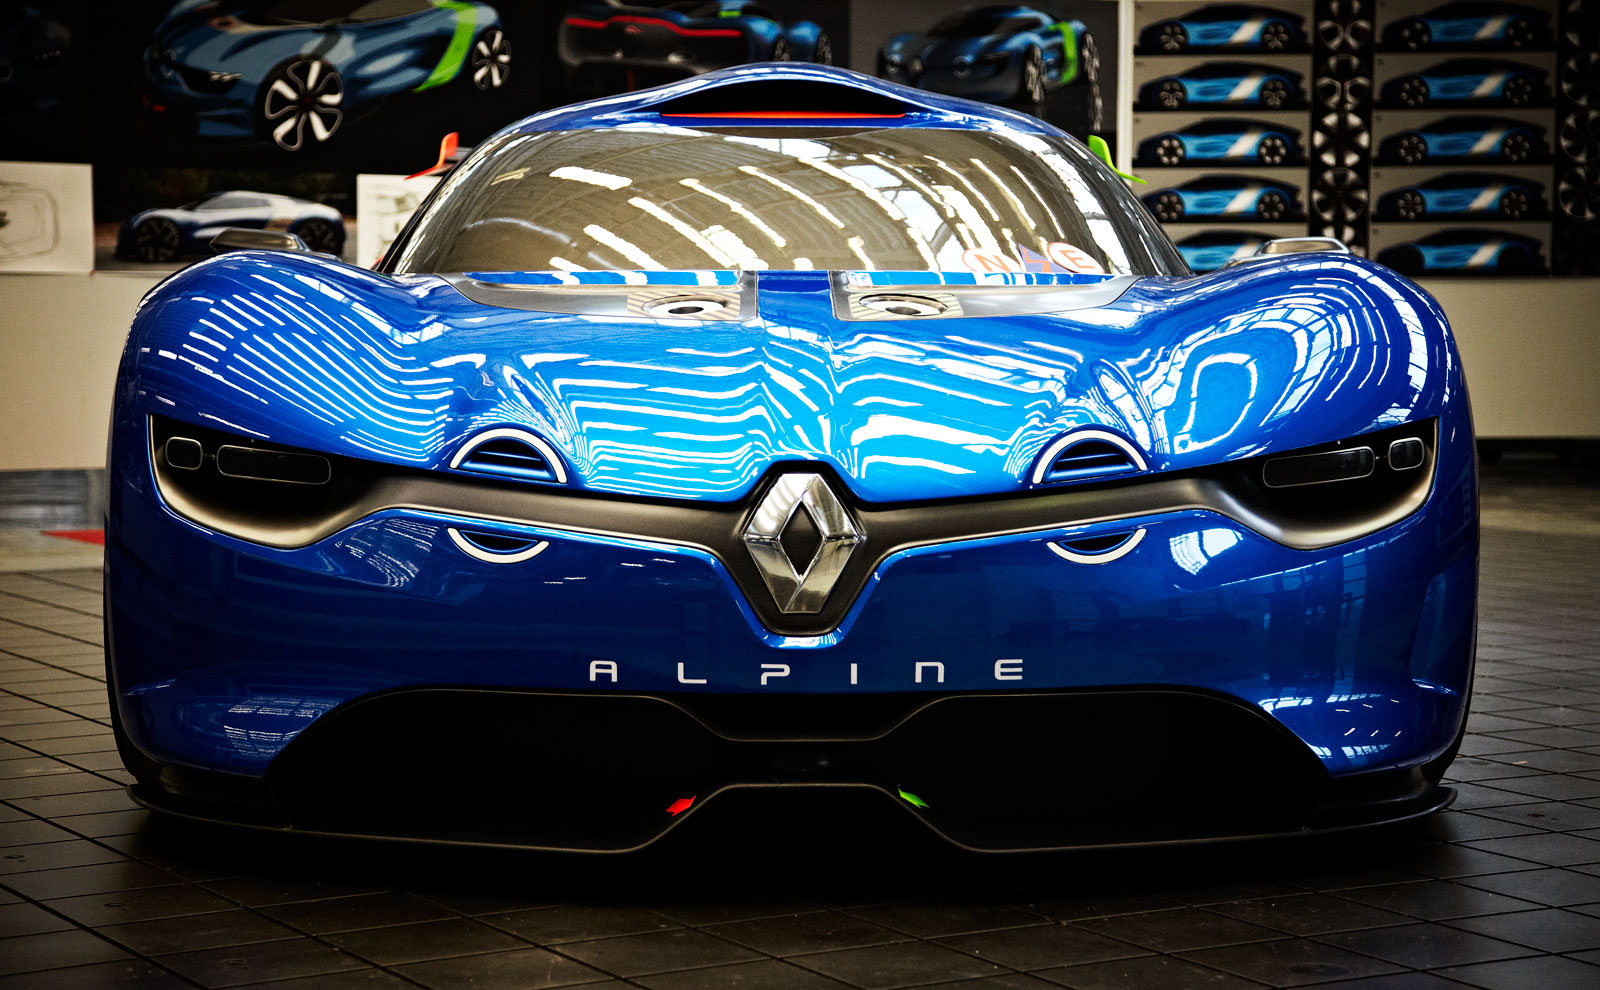 2012 Renault Alpine A110-50 - Concepts